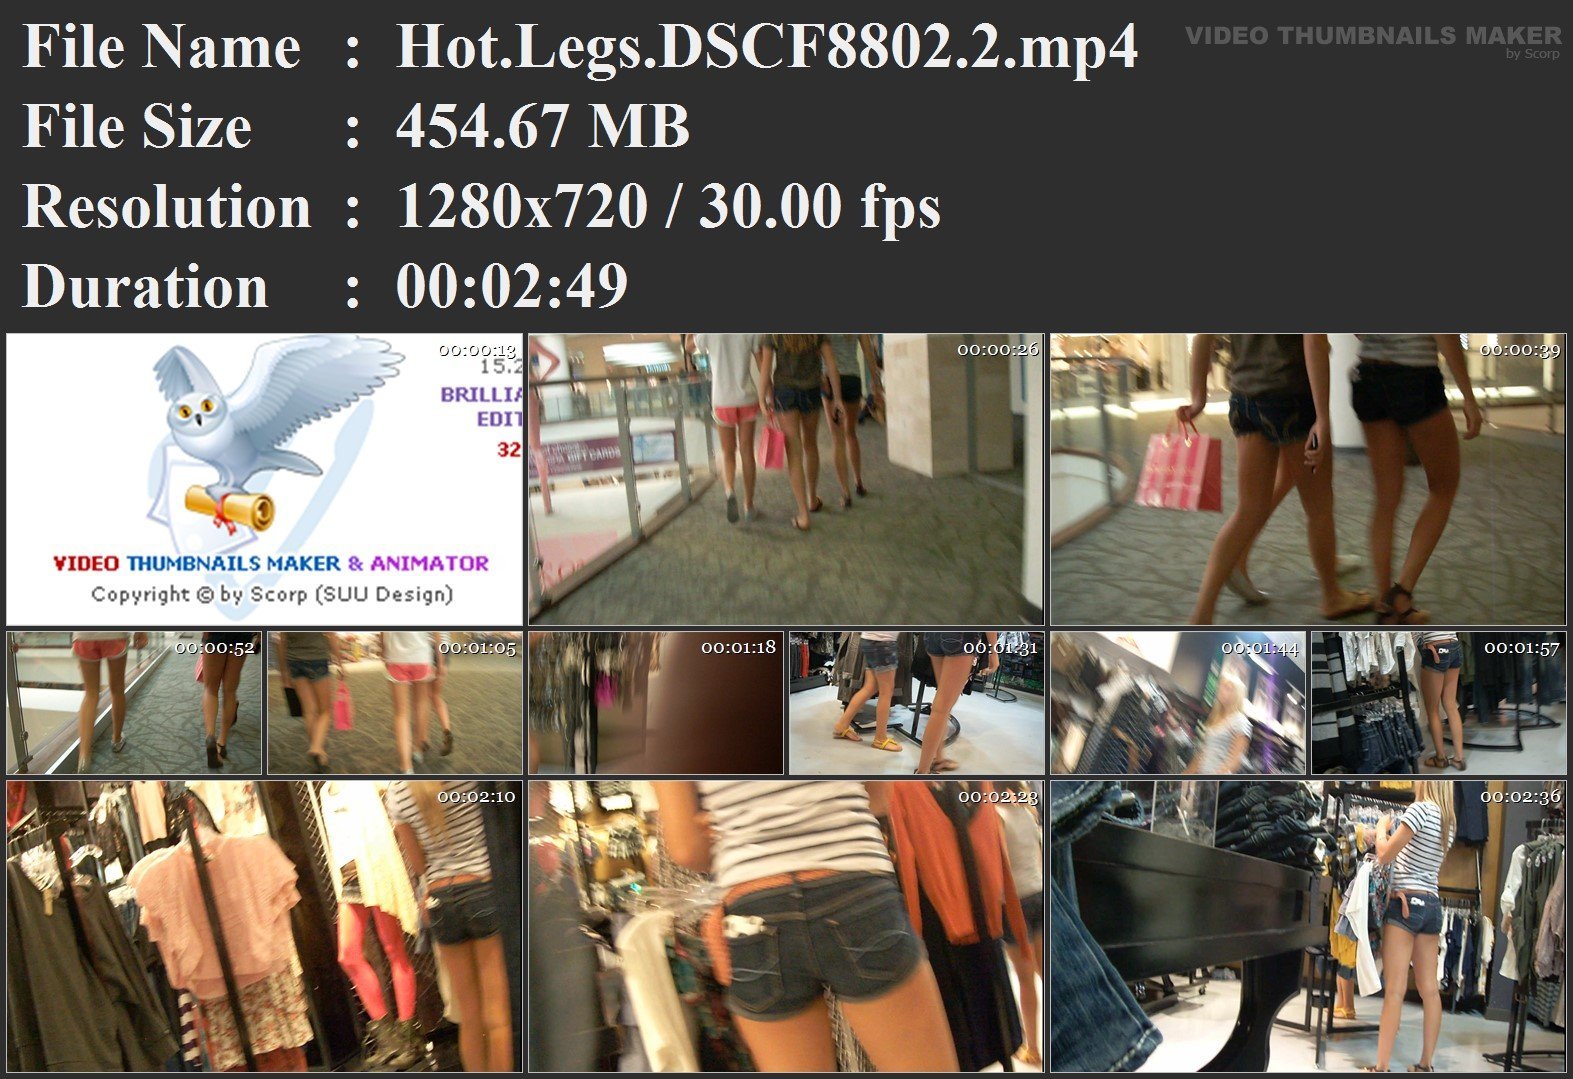 Hot.Legs.DSCF8802.2.mp4.jpg